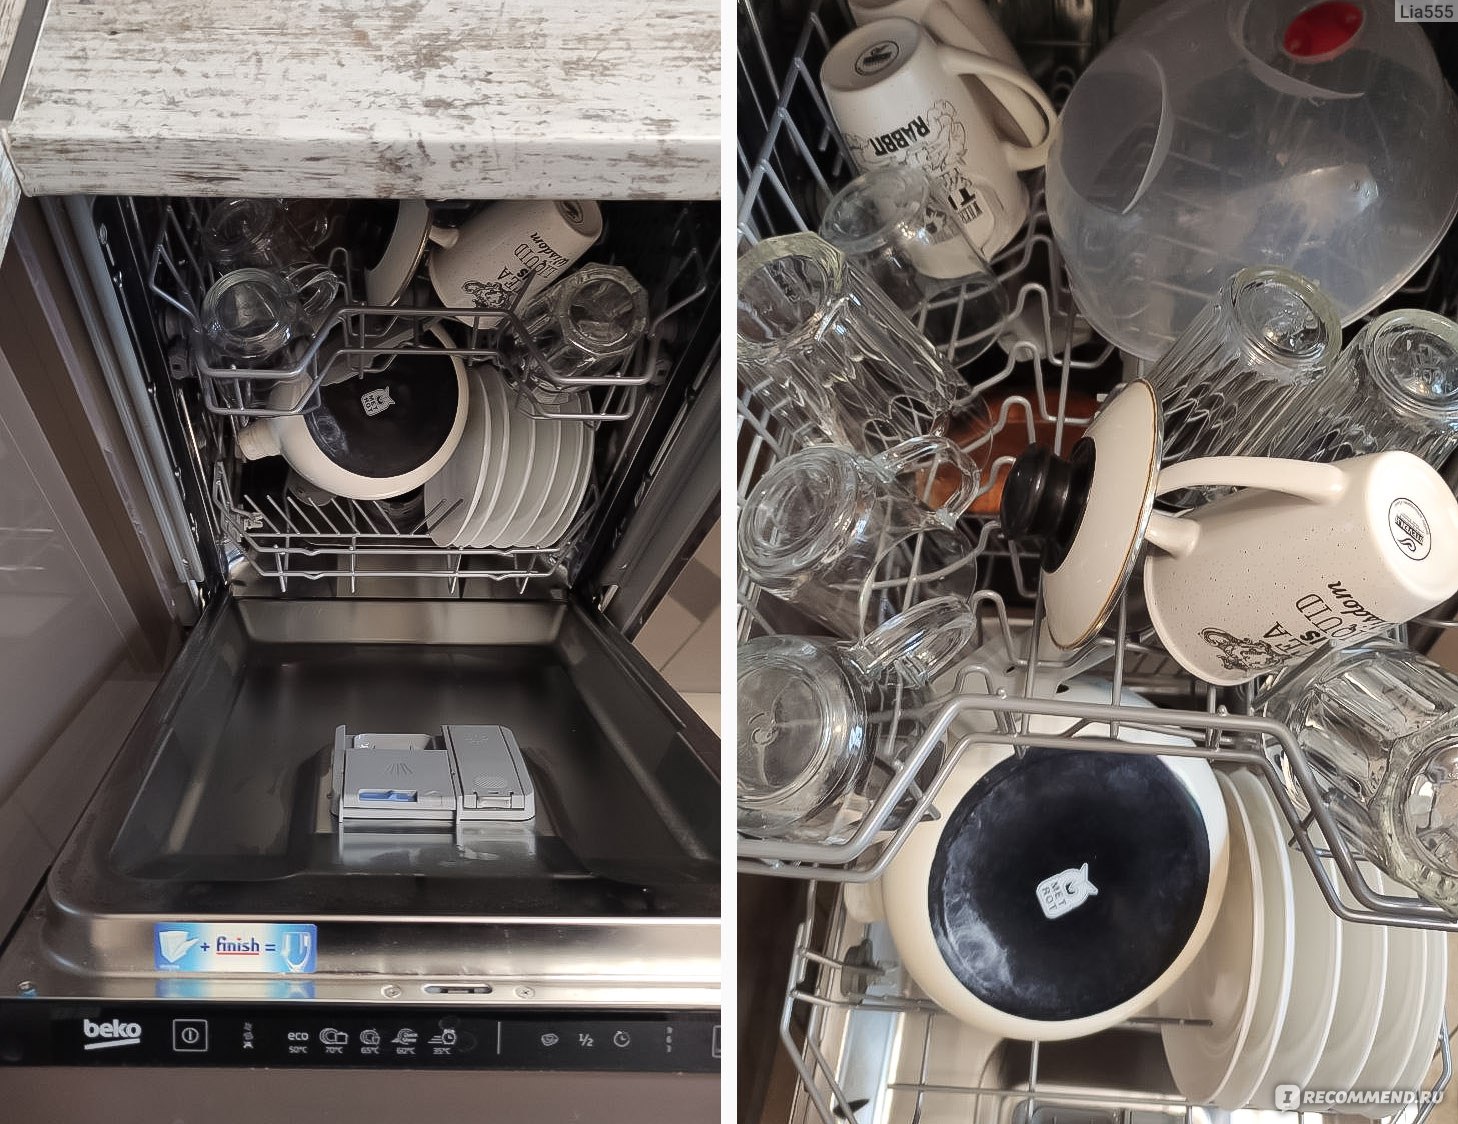 Посудомойка закончила работу: все чистое и целое!